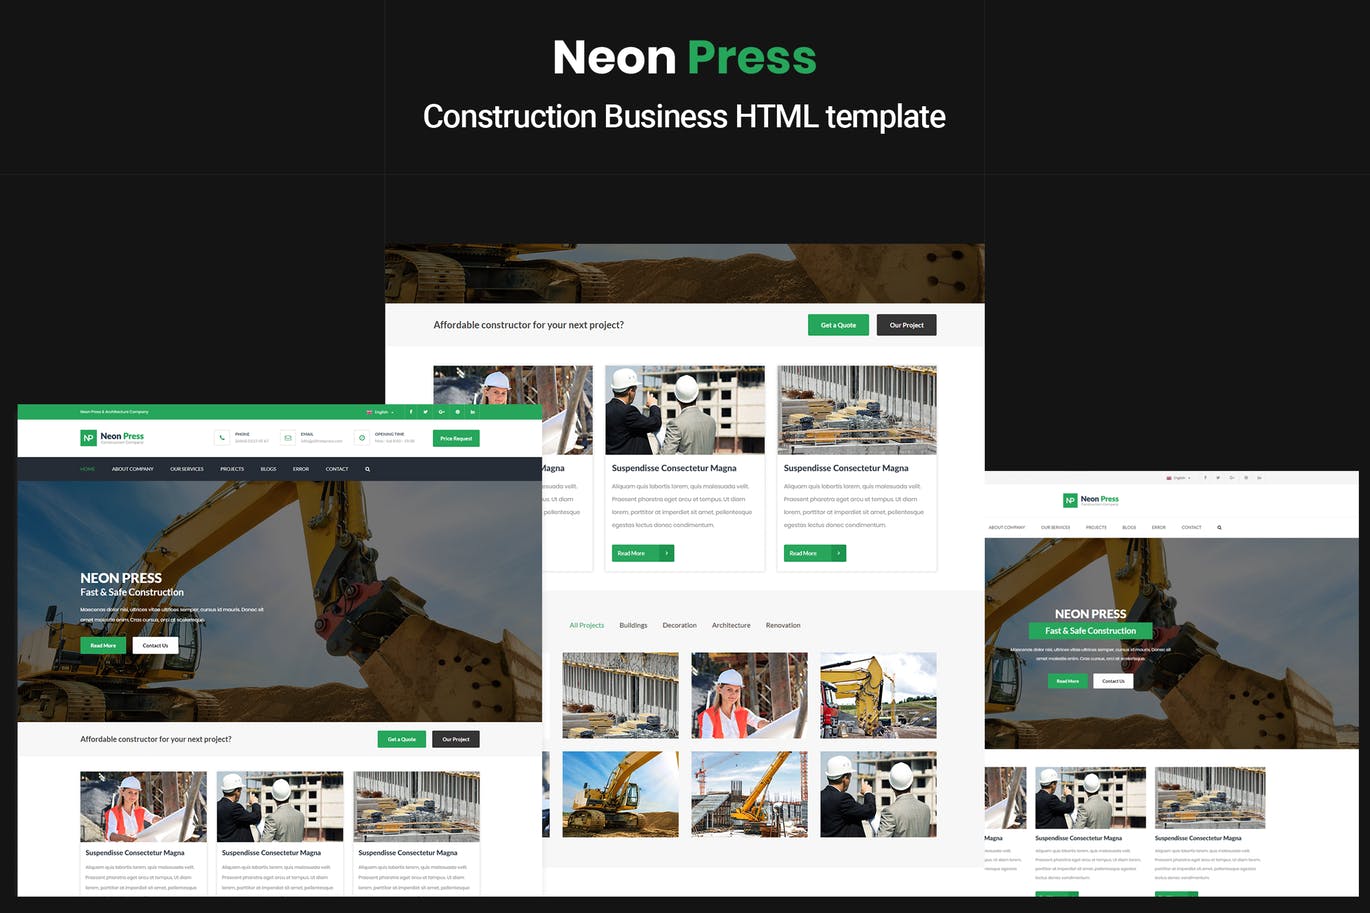 建筑业/建筑公司主题网站设计HTML模板第一素材精选 NeonPress – Construction Business HTML Template插图